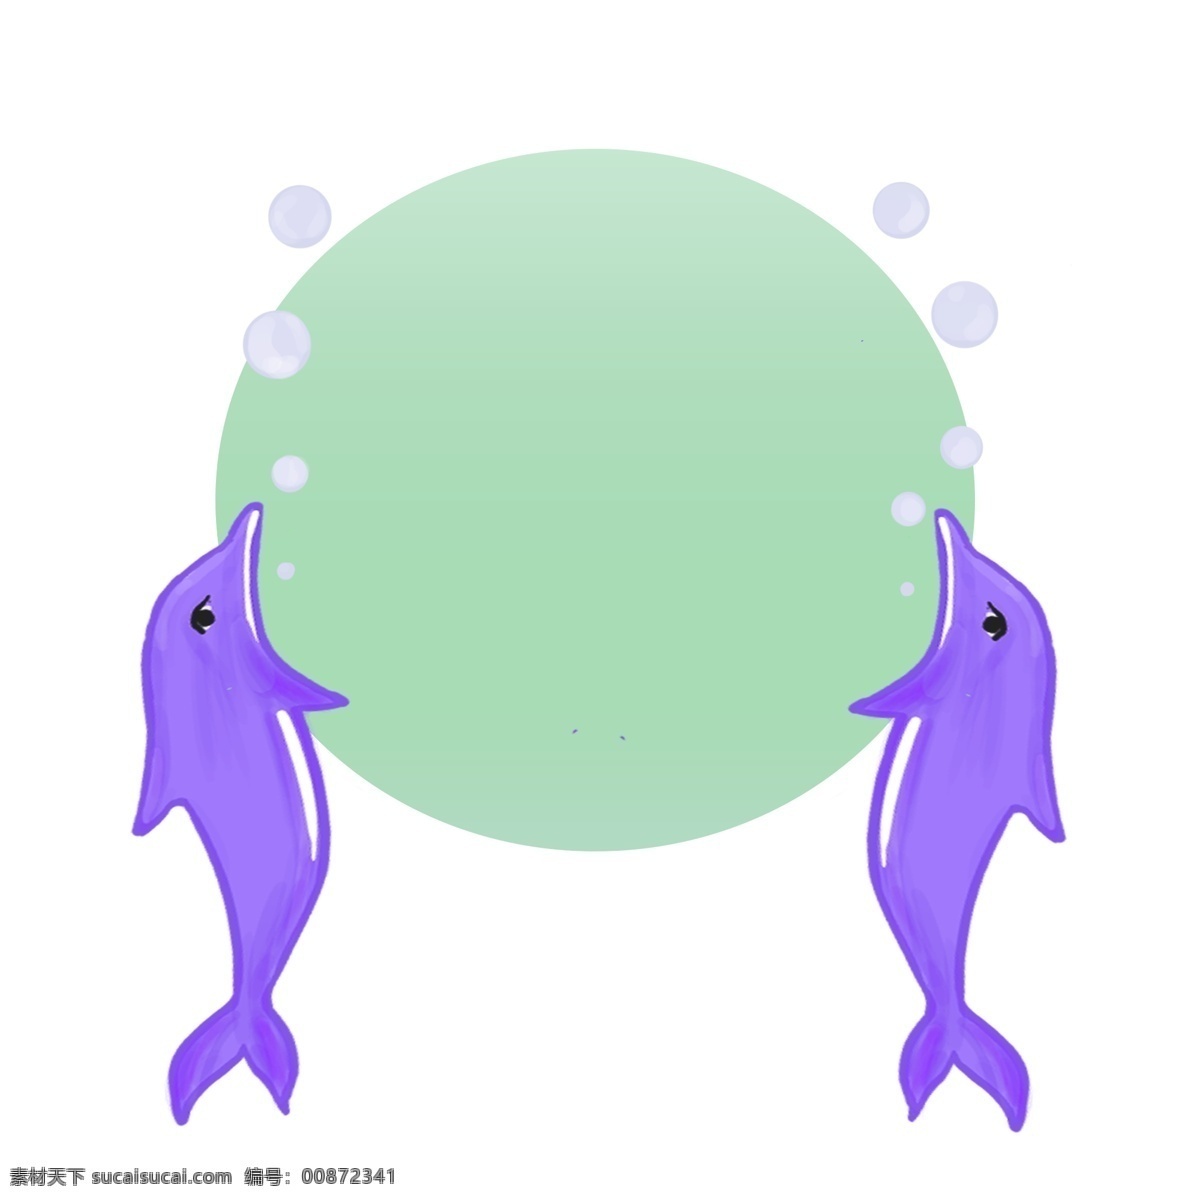 可爱 海豚 边框 紫色的海豚 蓝色的边框 卡通边框 小物边框 美丽边框 漂亮边框